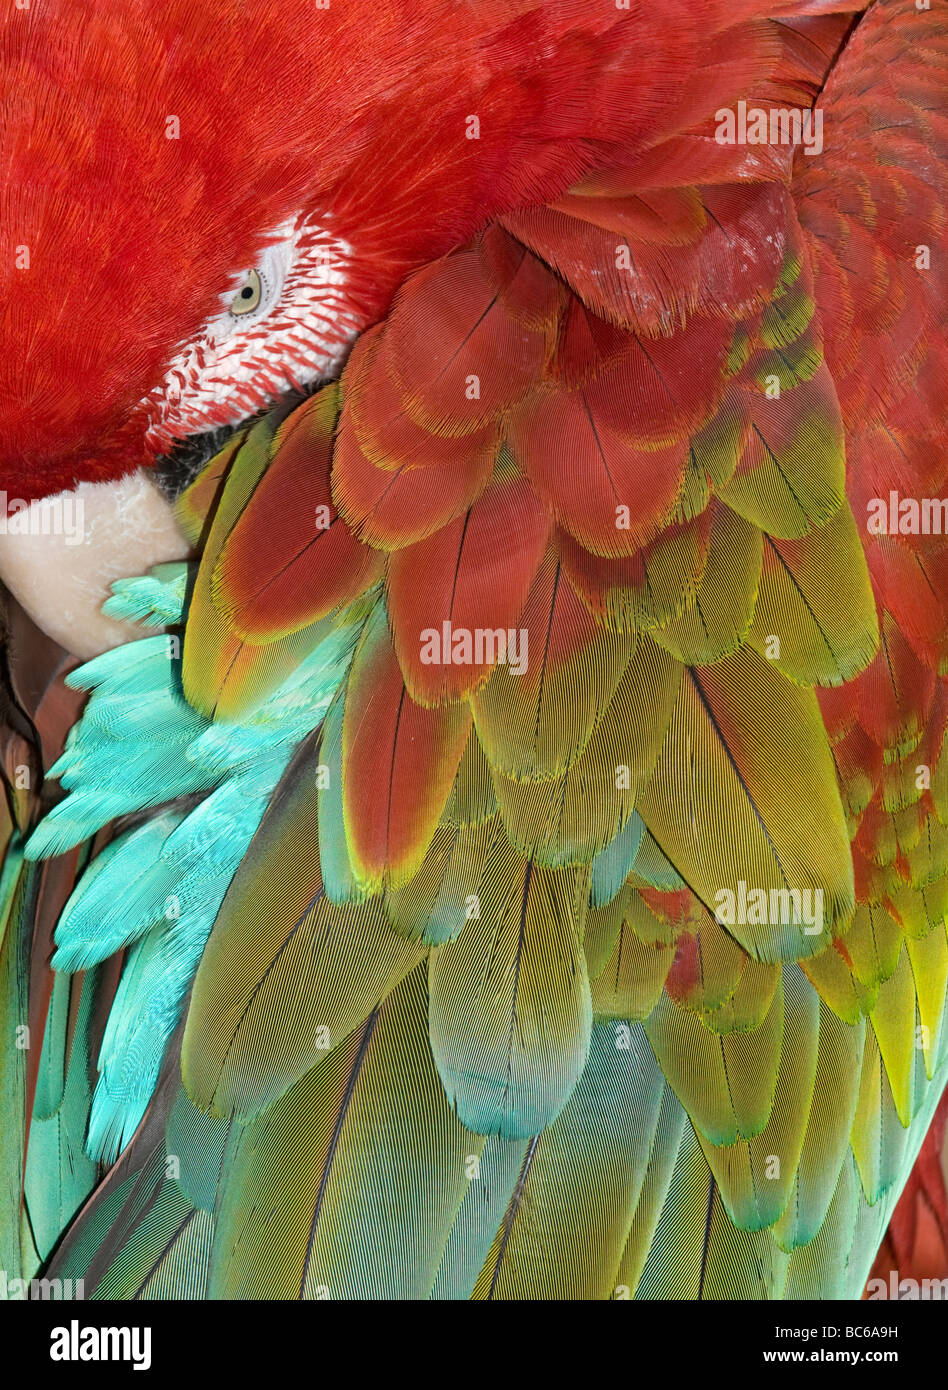 Ara vert et rouge (Ara chloroptera) dormir, détail de plumes Banque D'Images